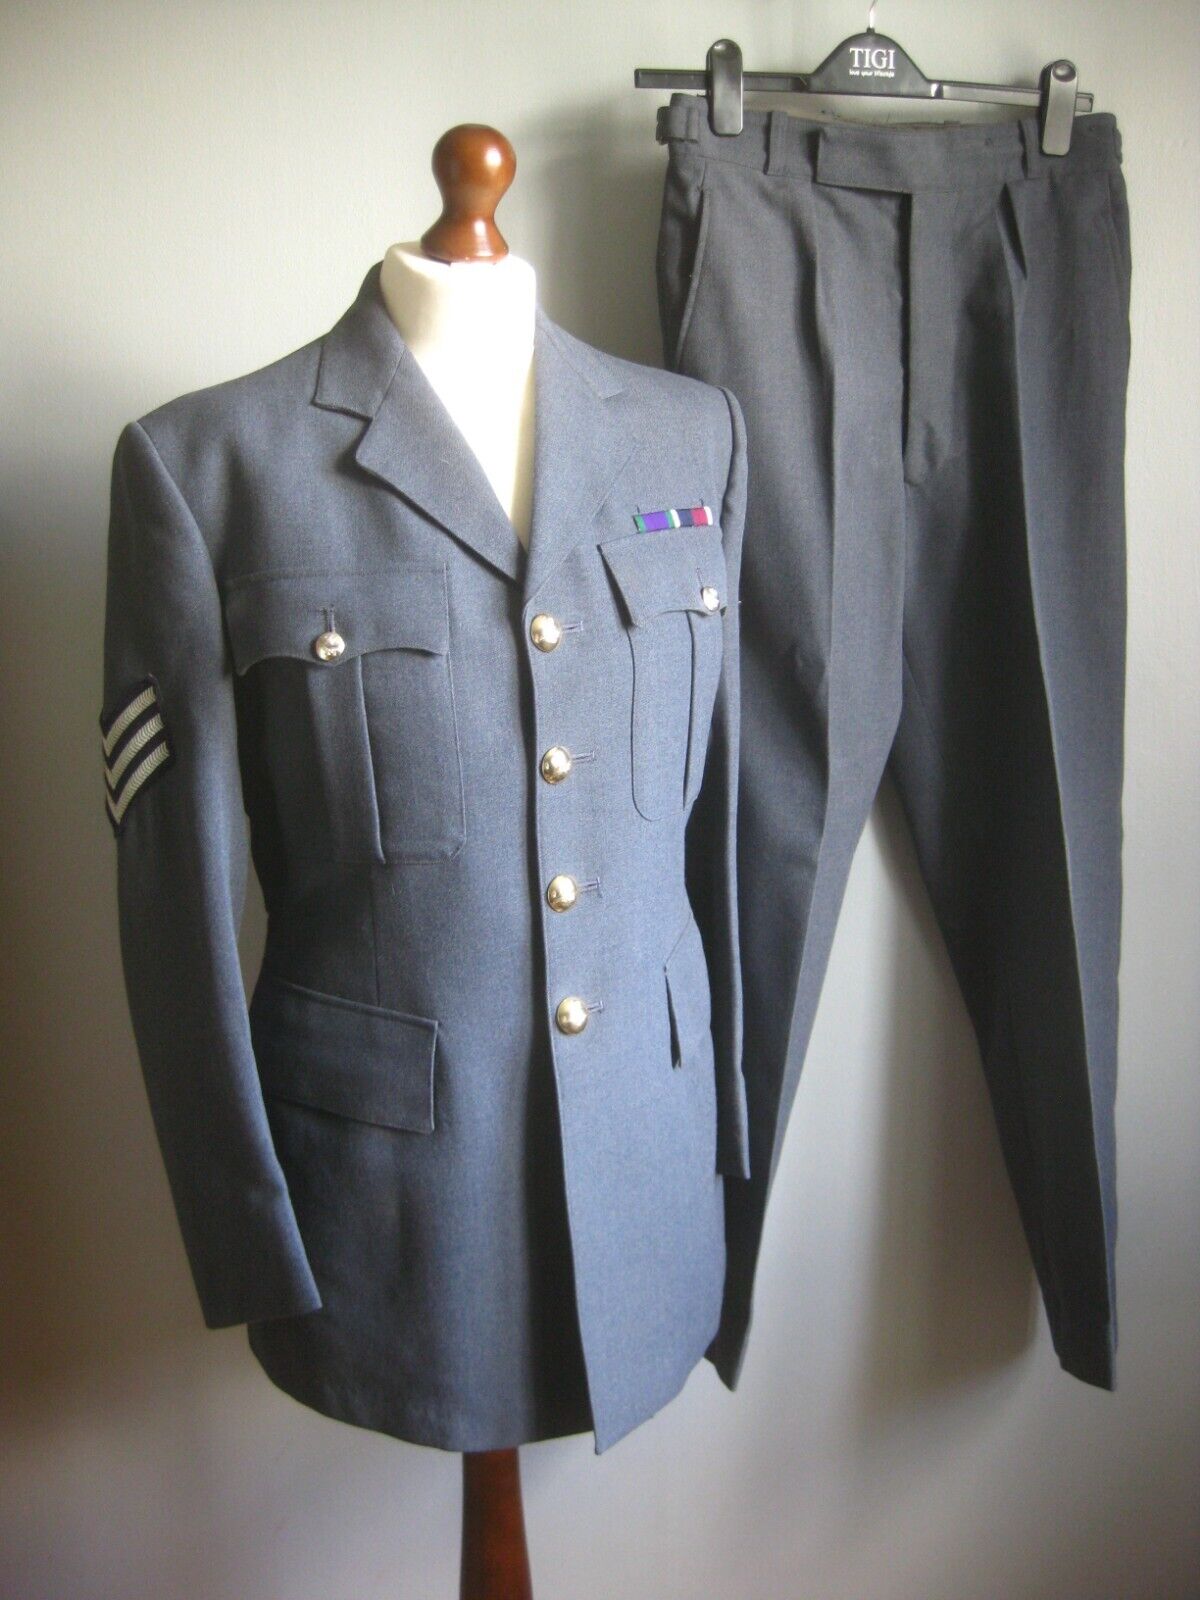 British Army RAF SUIT No1 Dress Uniform Jacket Trousers size 26 chest 38 W28 L28